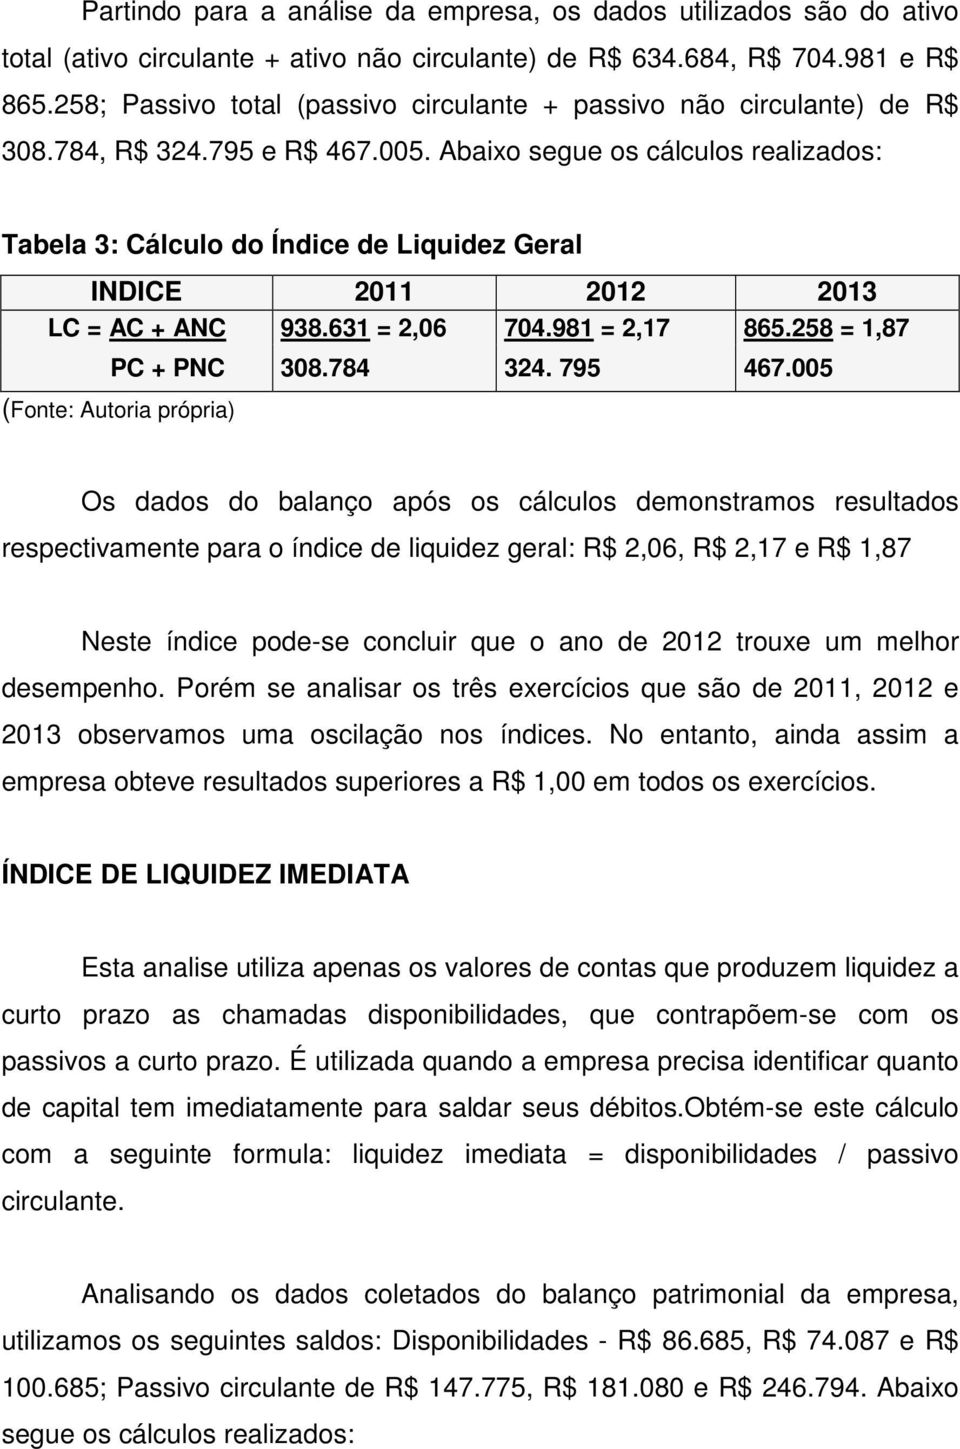 Abaixo segue os cálculos realizados: Tabela 3: Cálculo do Índice de Liquidez Geral INDICE 2011 2012 2013 LC = AC + ANC 938.631 = 2,06 704.981 = 2,17 865.258 = 1,87 PC + PNC 308.784 324. 795 467.